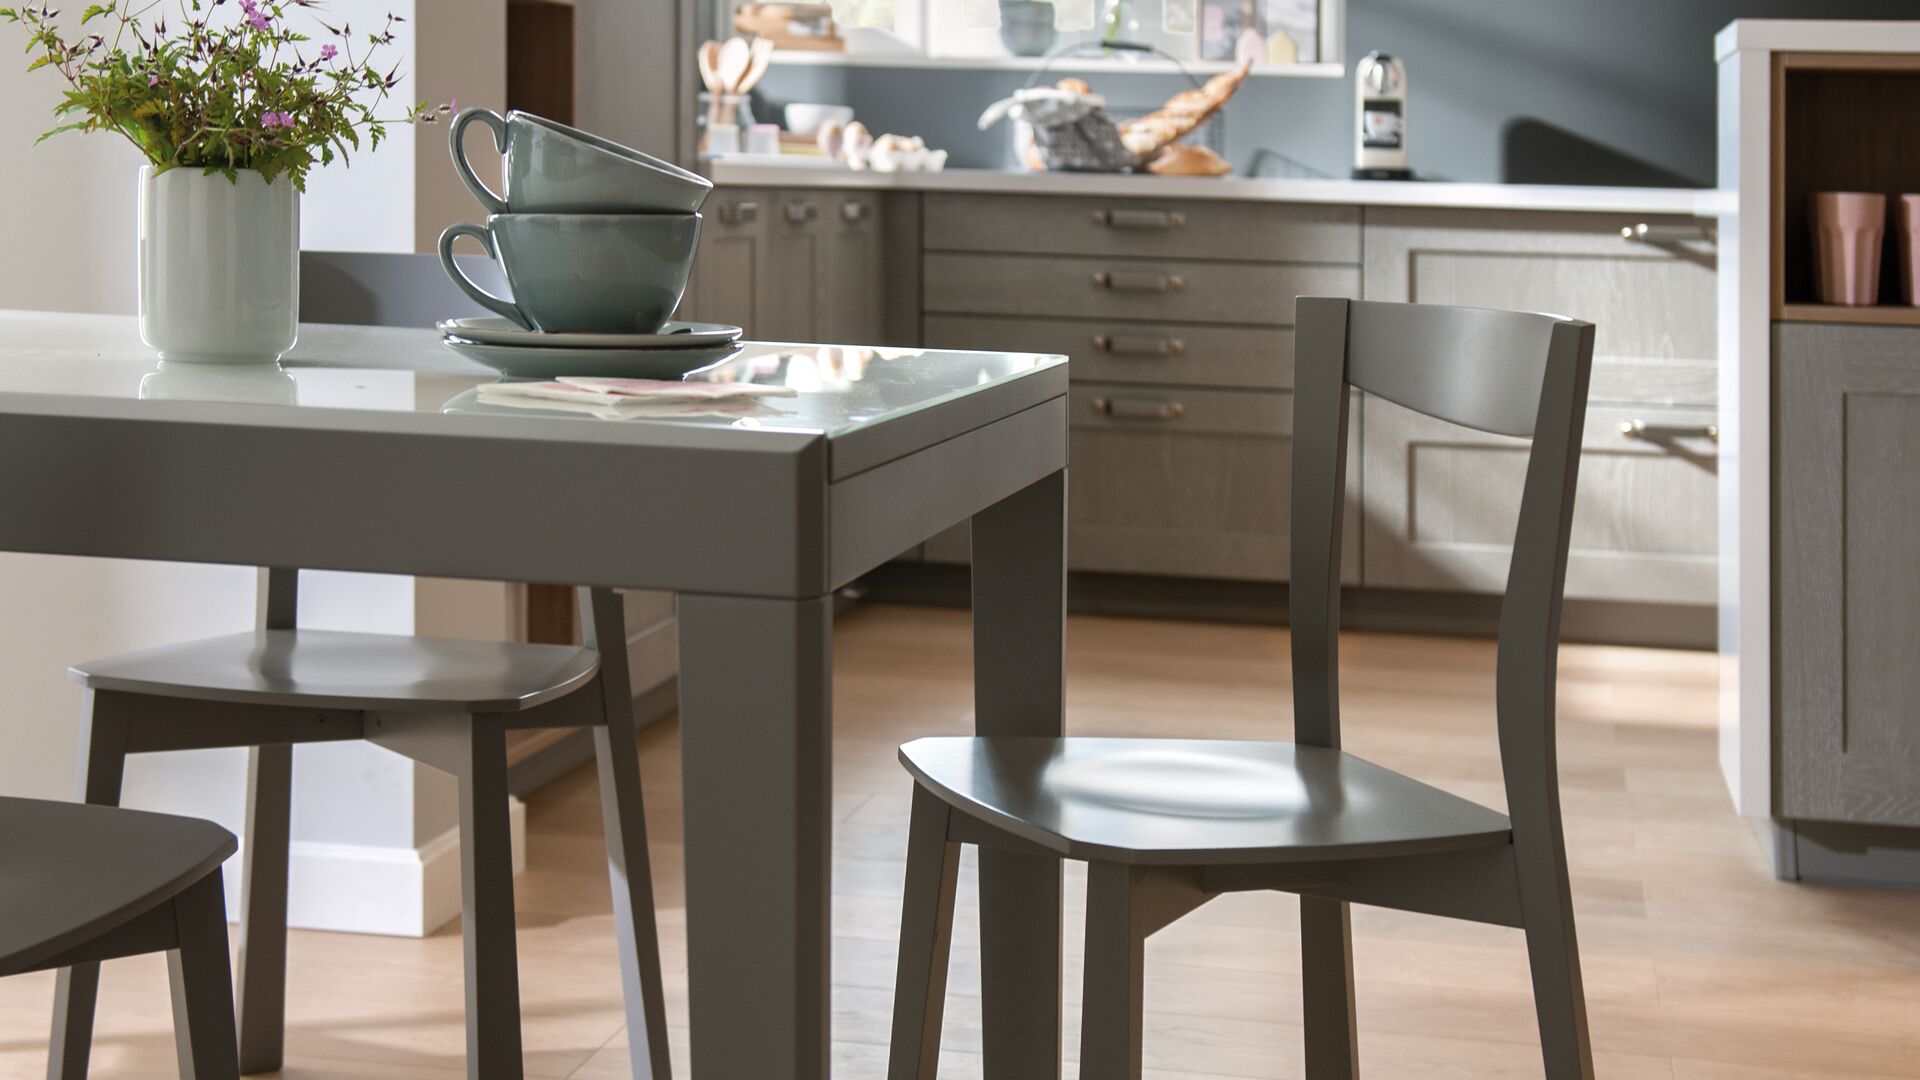 Mesas y sillas de cocina a juego de color gris